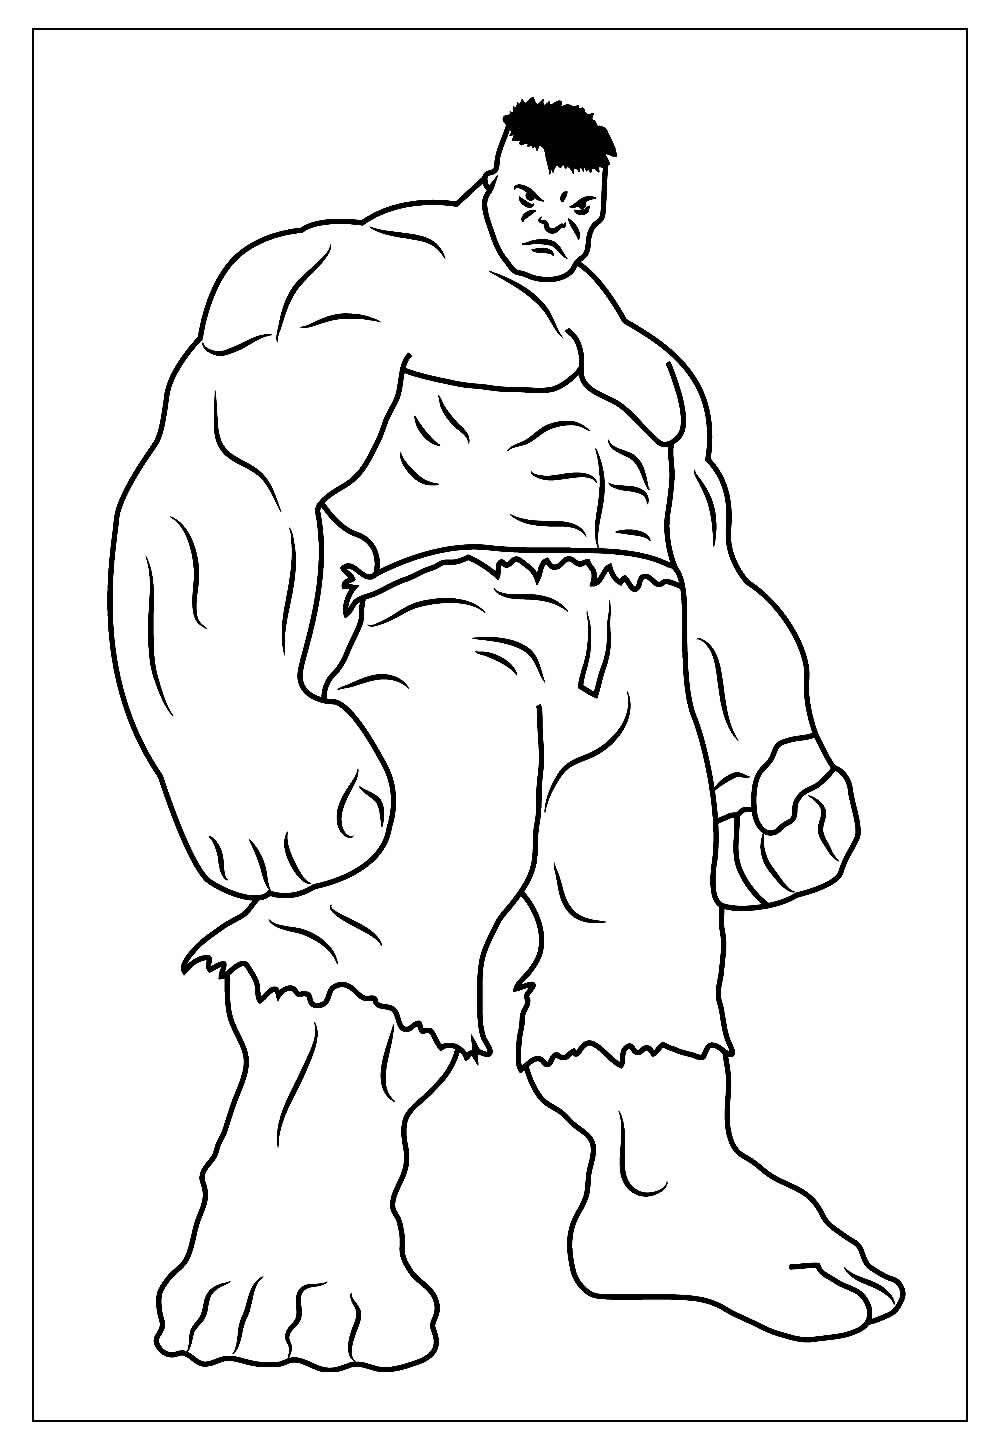 Desenho para colorir do Hulk